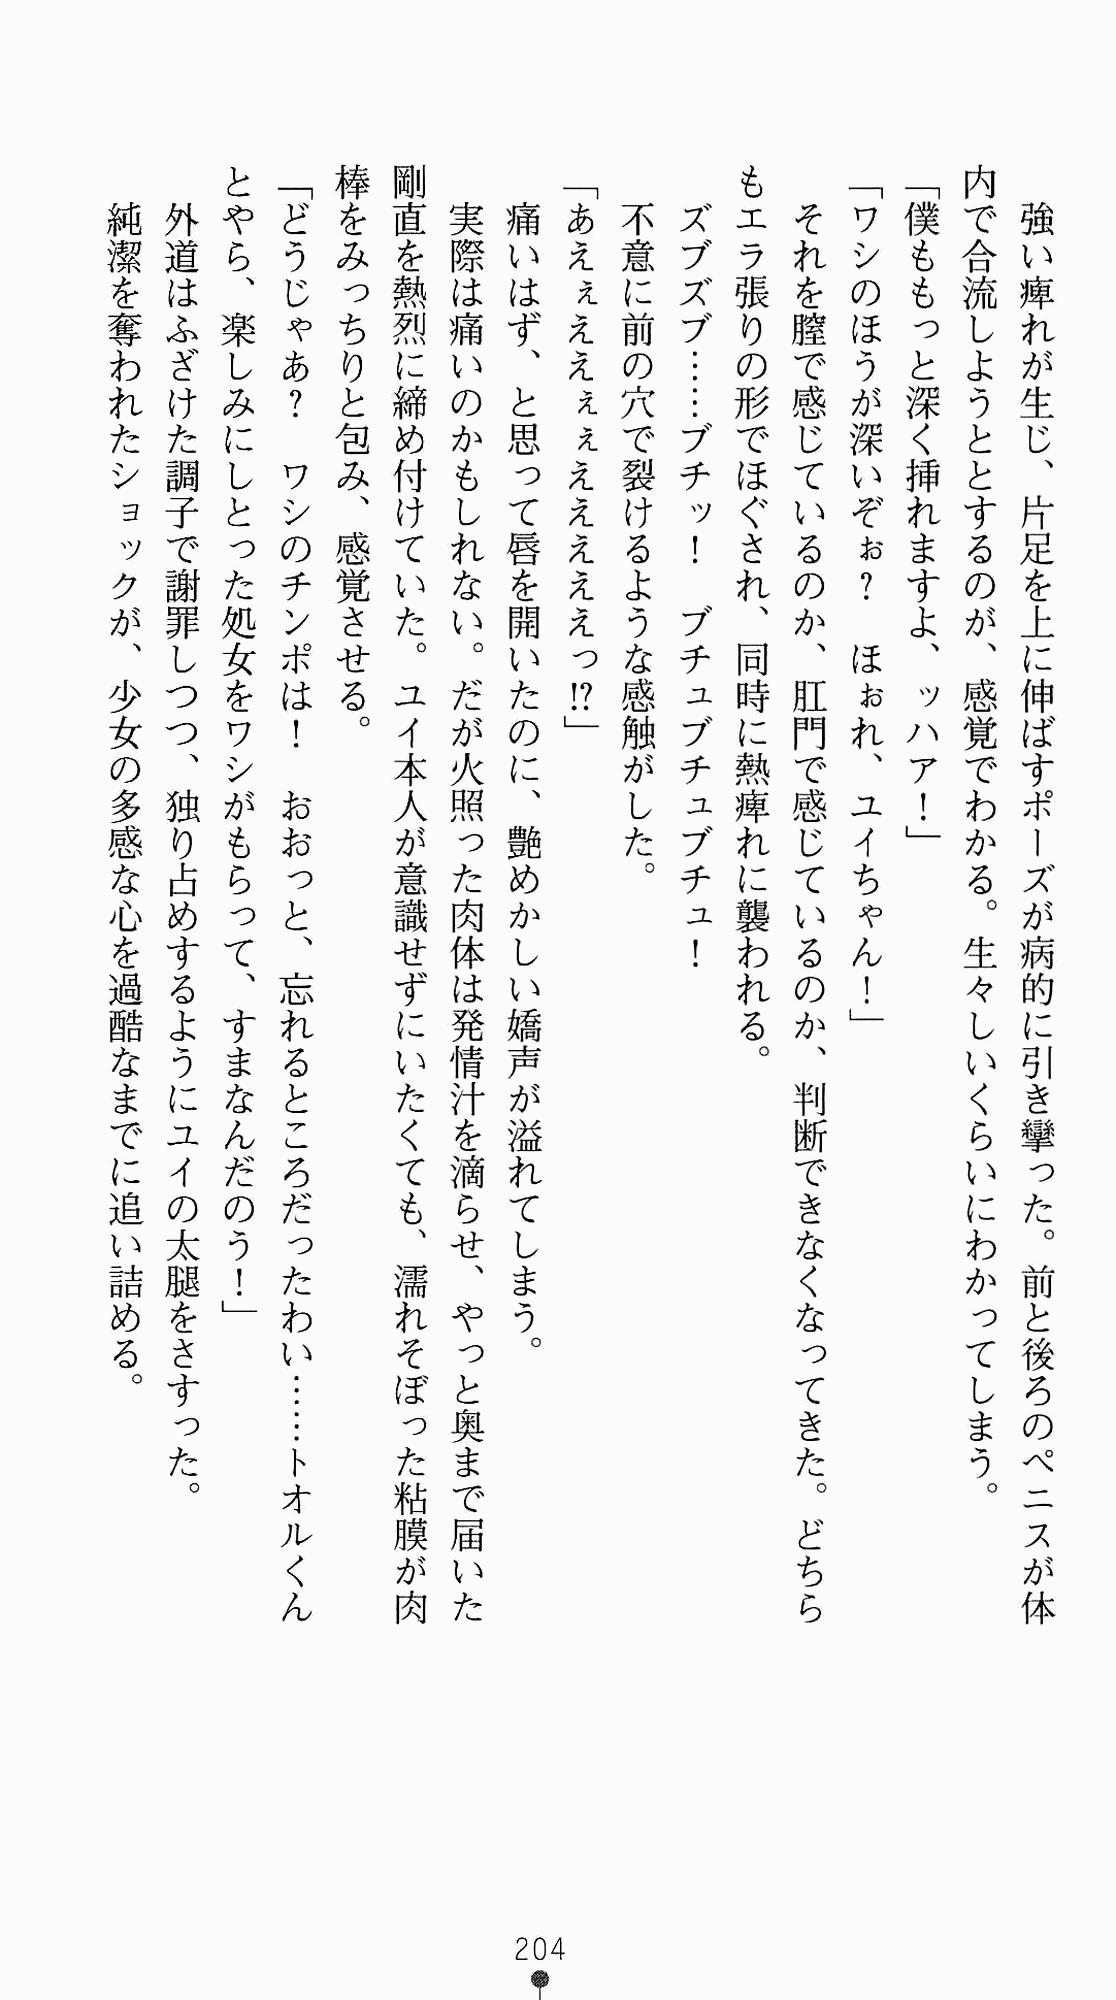 [Kagura Youko, Takahama Tarou] Shiritsu Tantei Takasuga Erika no Jikenbo 2 - Chijouha AV Satsuei 24-ji 219